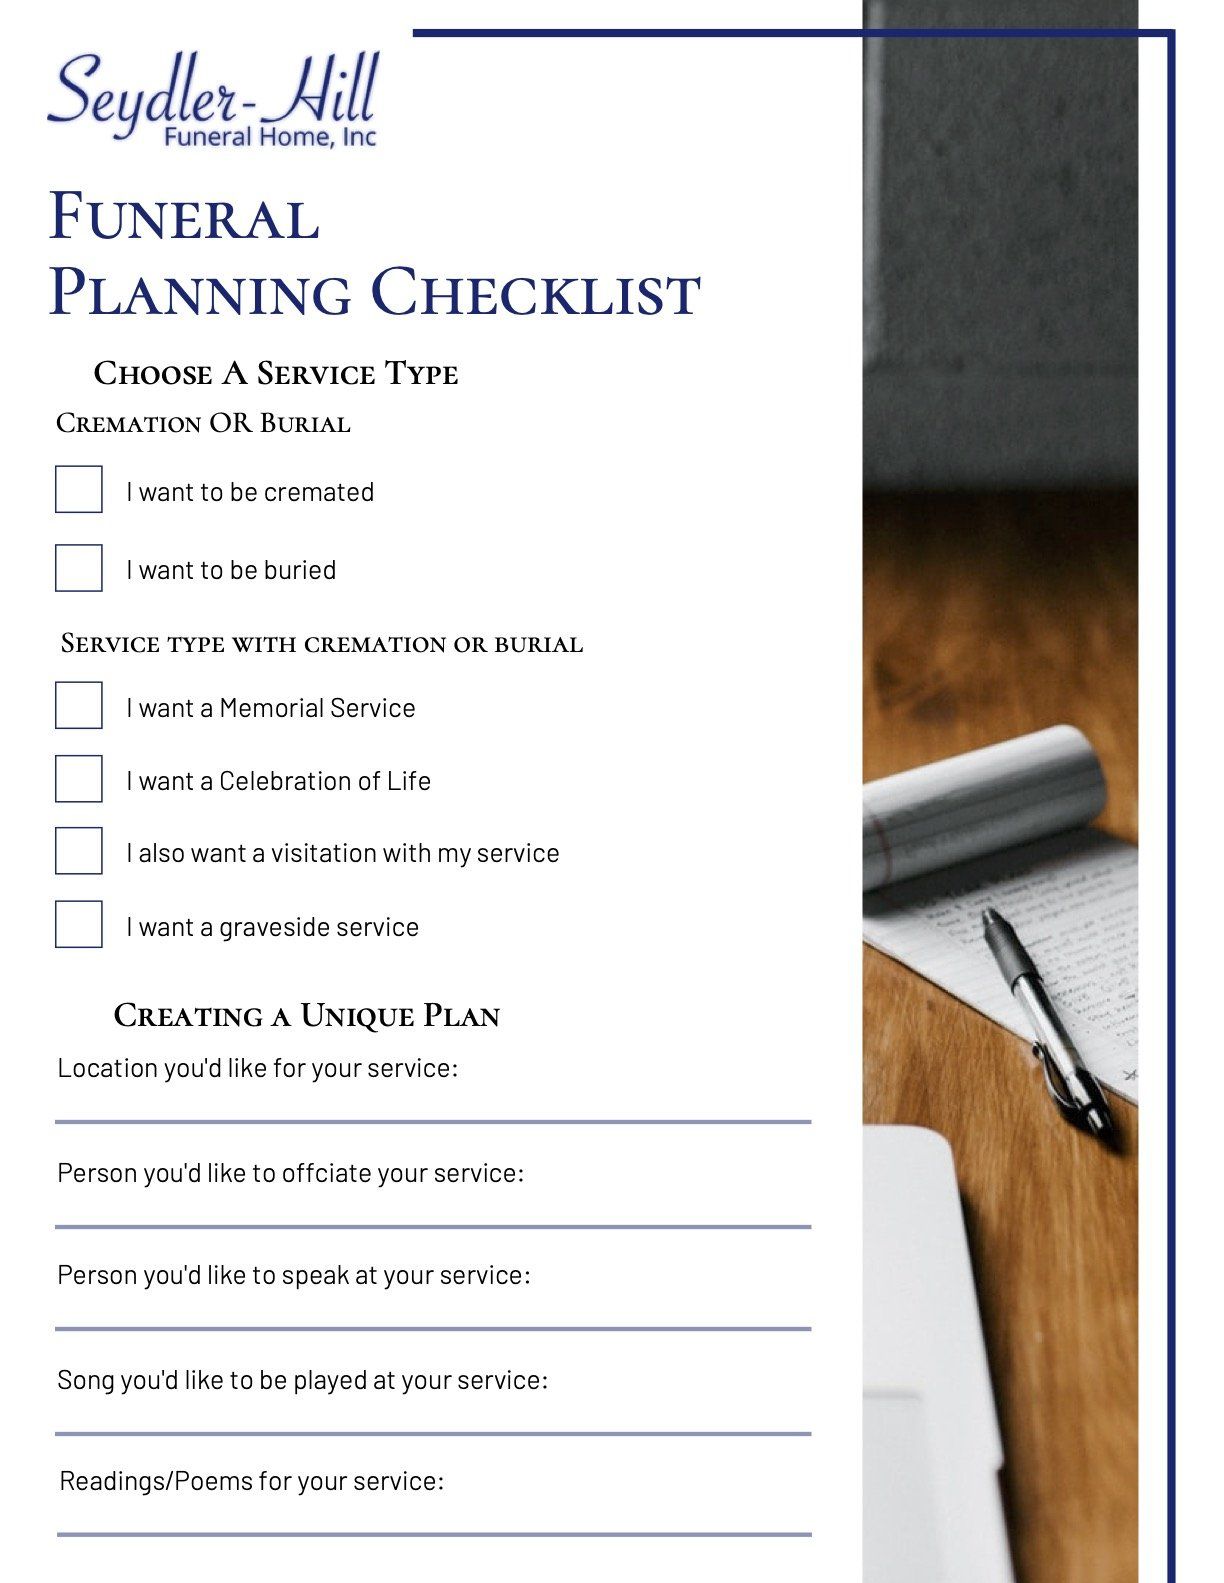 plan my funeral checklist